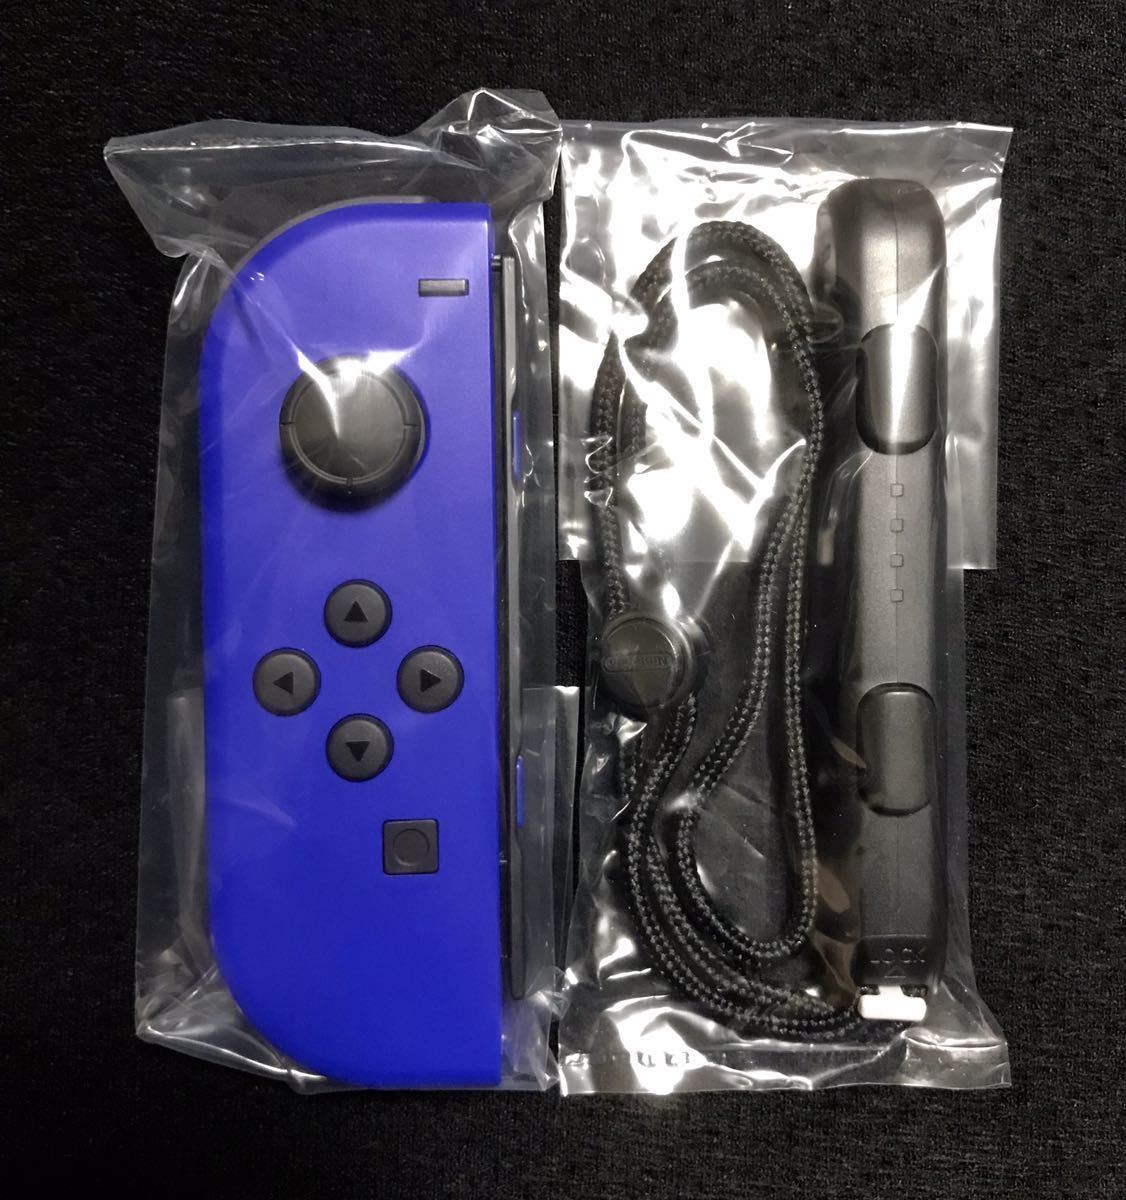 新品未使用 送料込 Nintendo switch ニンテンドースイッチ Joy-Con ジョイコン (L) ブルー joycon 左 純正 コントローラー